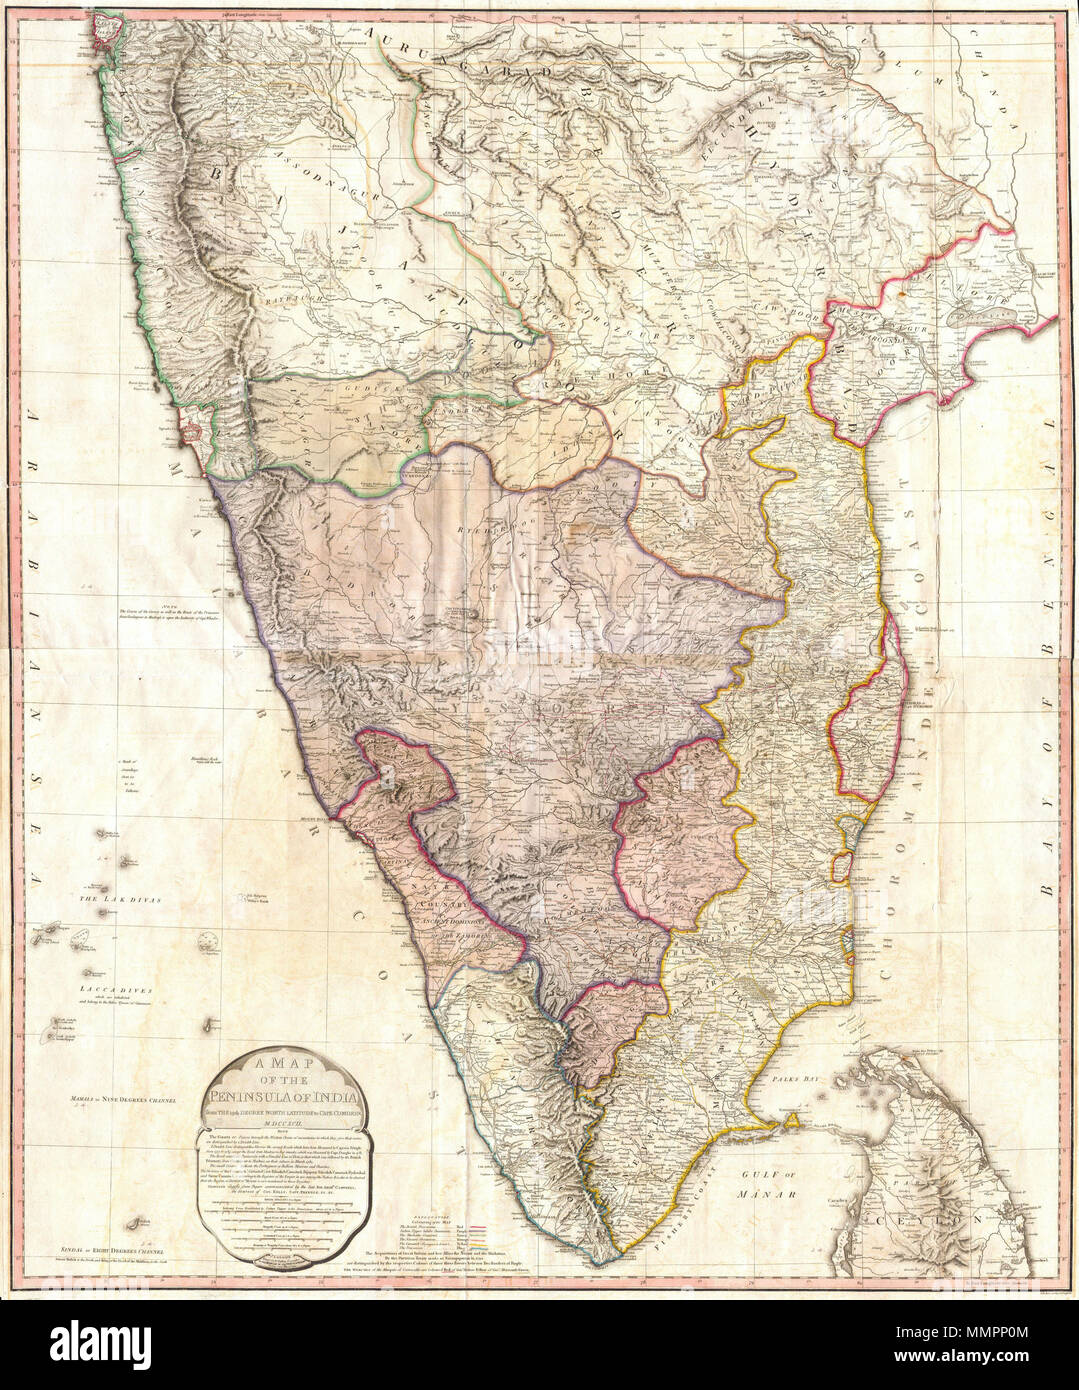 . Englisch: Diese Karte wird sofort nach der dritten Anglo-Mysore Krieg (1789-92), zeigt die Aufteilung der territorialen Verlust durch das Königreich Mysore durch den Vertrag 1792 von Seringapatam und. Eine "Third Edition' wurde 1800 mit den territorialen Veränderungen, die nach der vierten Anglo-Mysore Krieg (1798-1799). Beschreibung von Geographicus: Eine der größten und eindrucksvollsten Karten von Indien im 18. Jahrhundert zu erscheinen. Zeigt den Subkontinent von Bombay (Mumbai) und Aurungabad, Süden einschließlich der nördlichen Hälfte von Sri Lanka (Ceylon). Gedruckt im Jahre 1793 in London von William Faden, "Royal Stockfoto